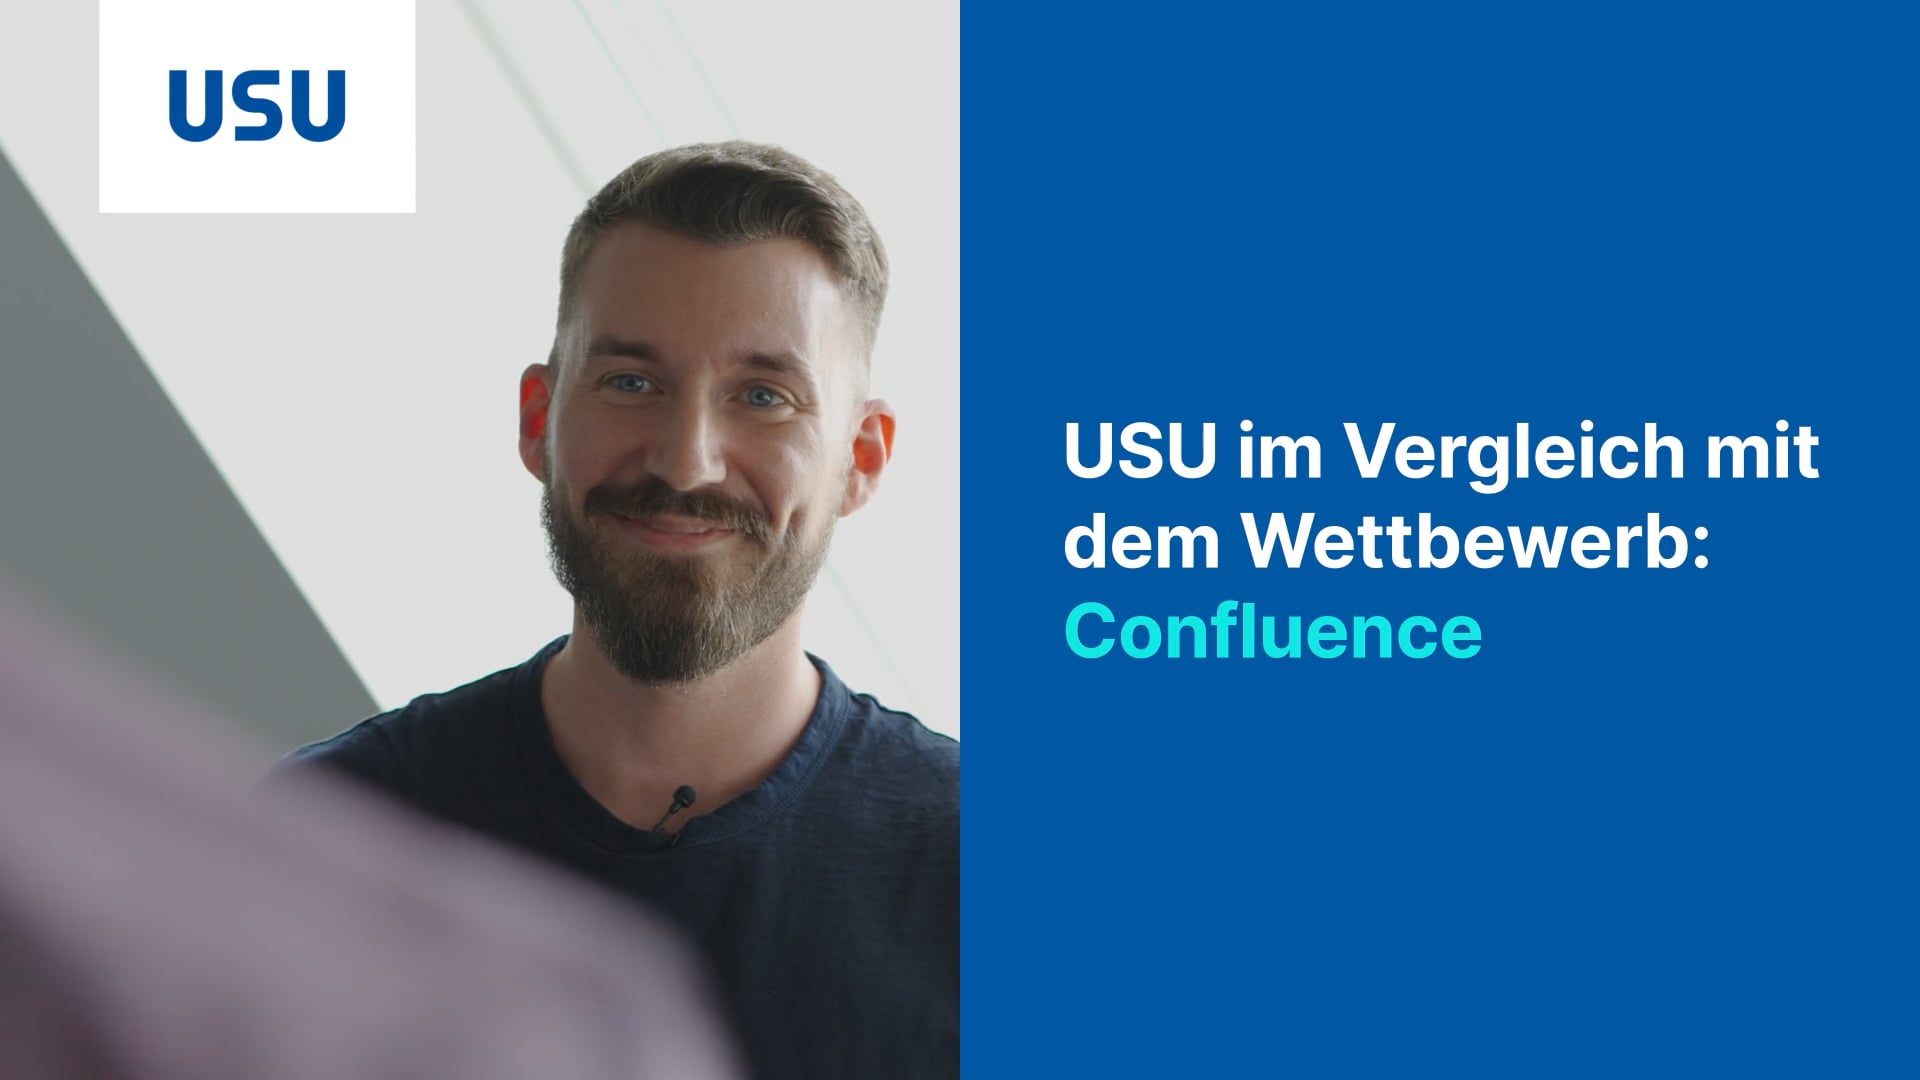 USU VS Confluence